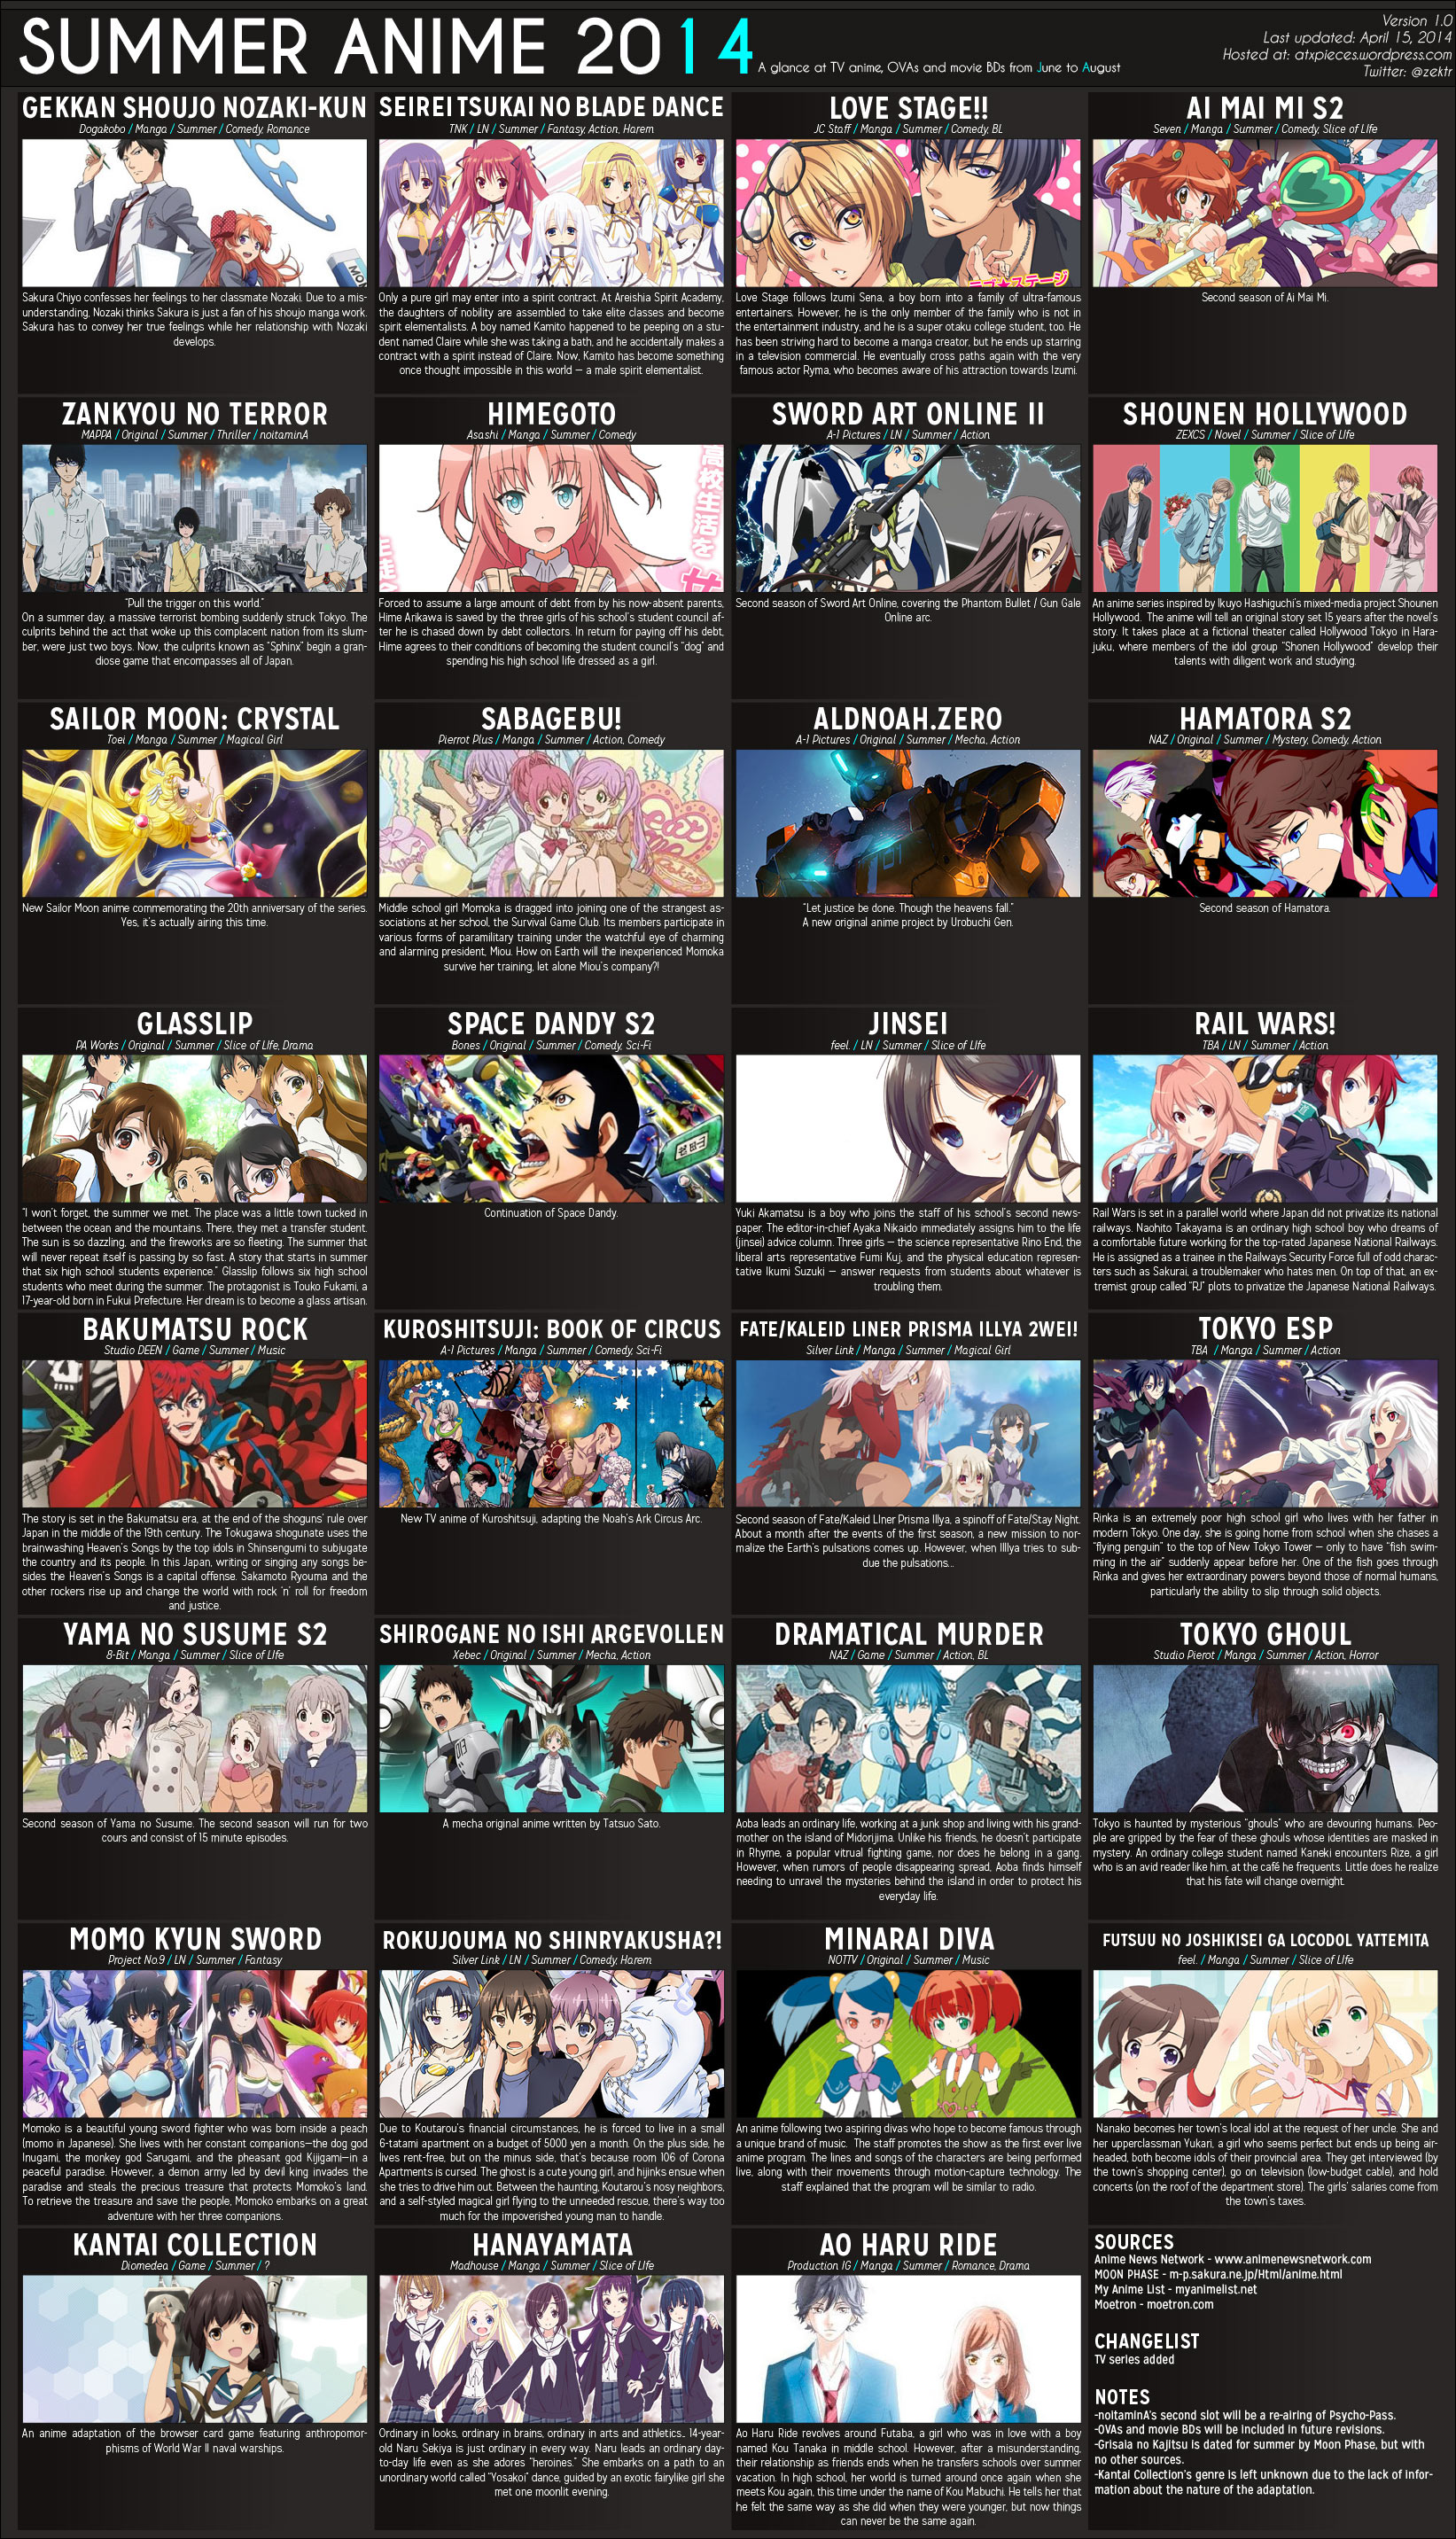 Anime Spring 2014 Lineup